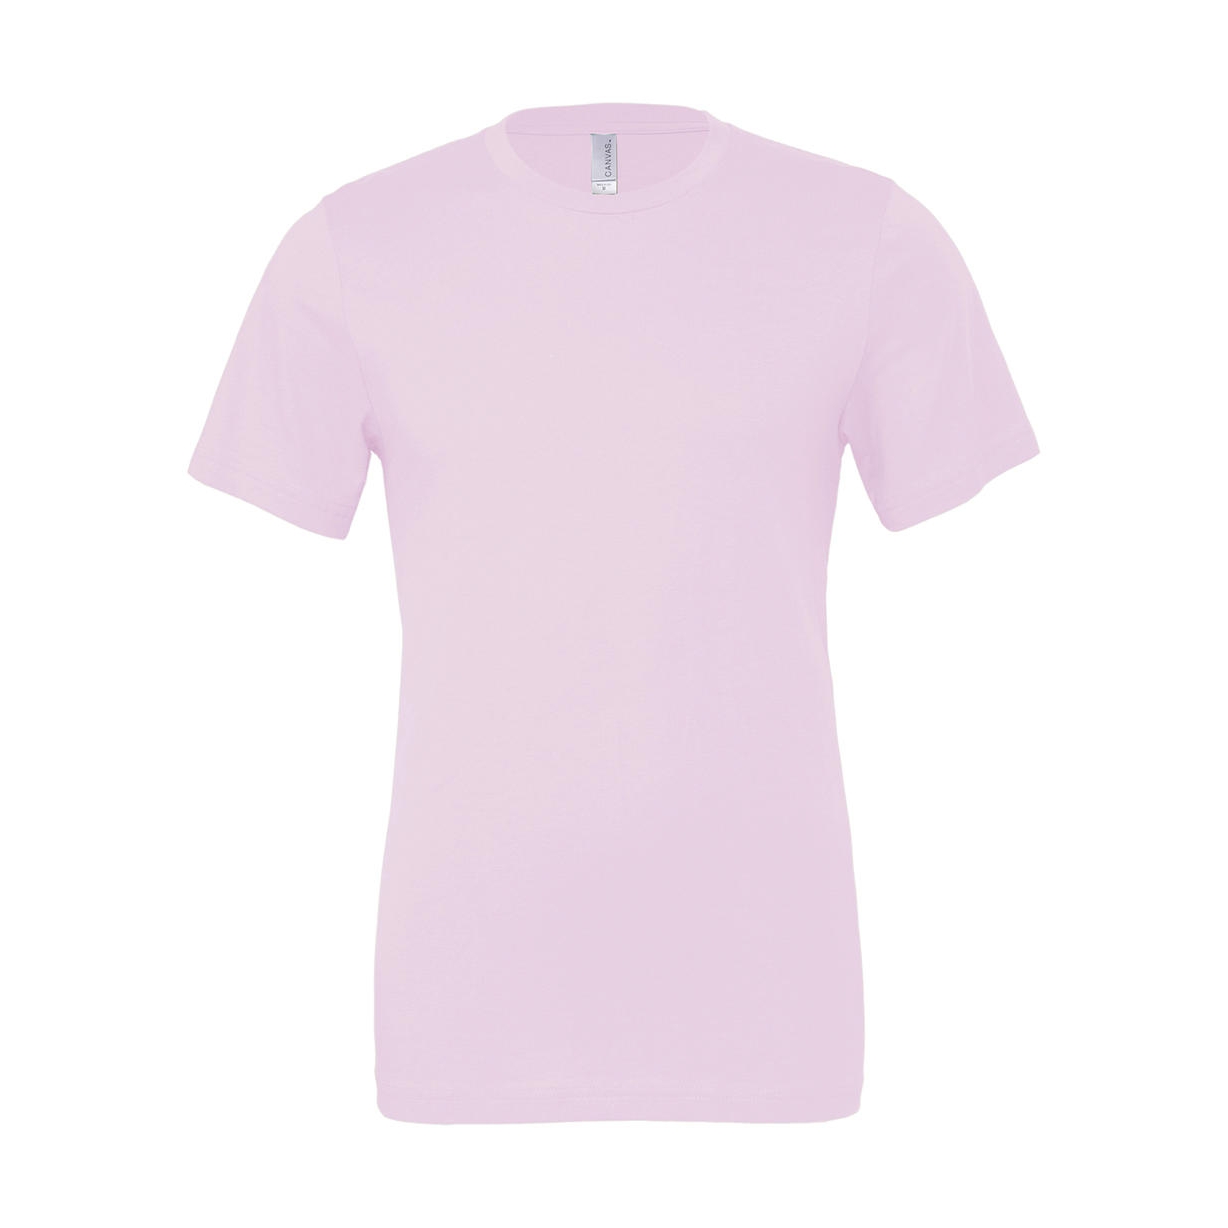 Tričko Bella Jersey - světle růžové, XS